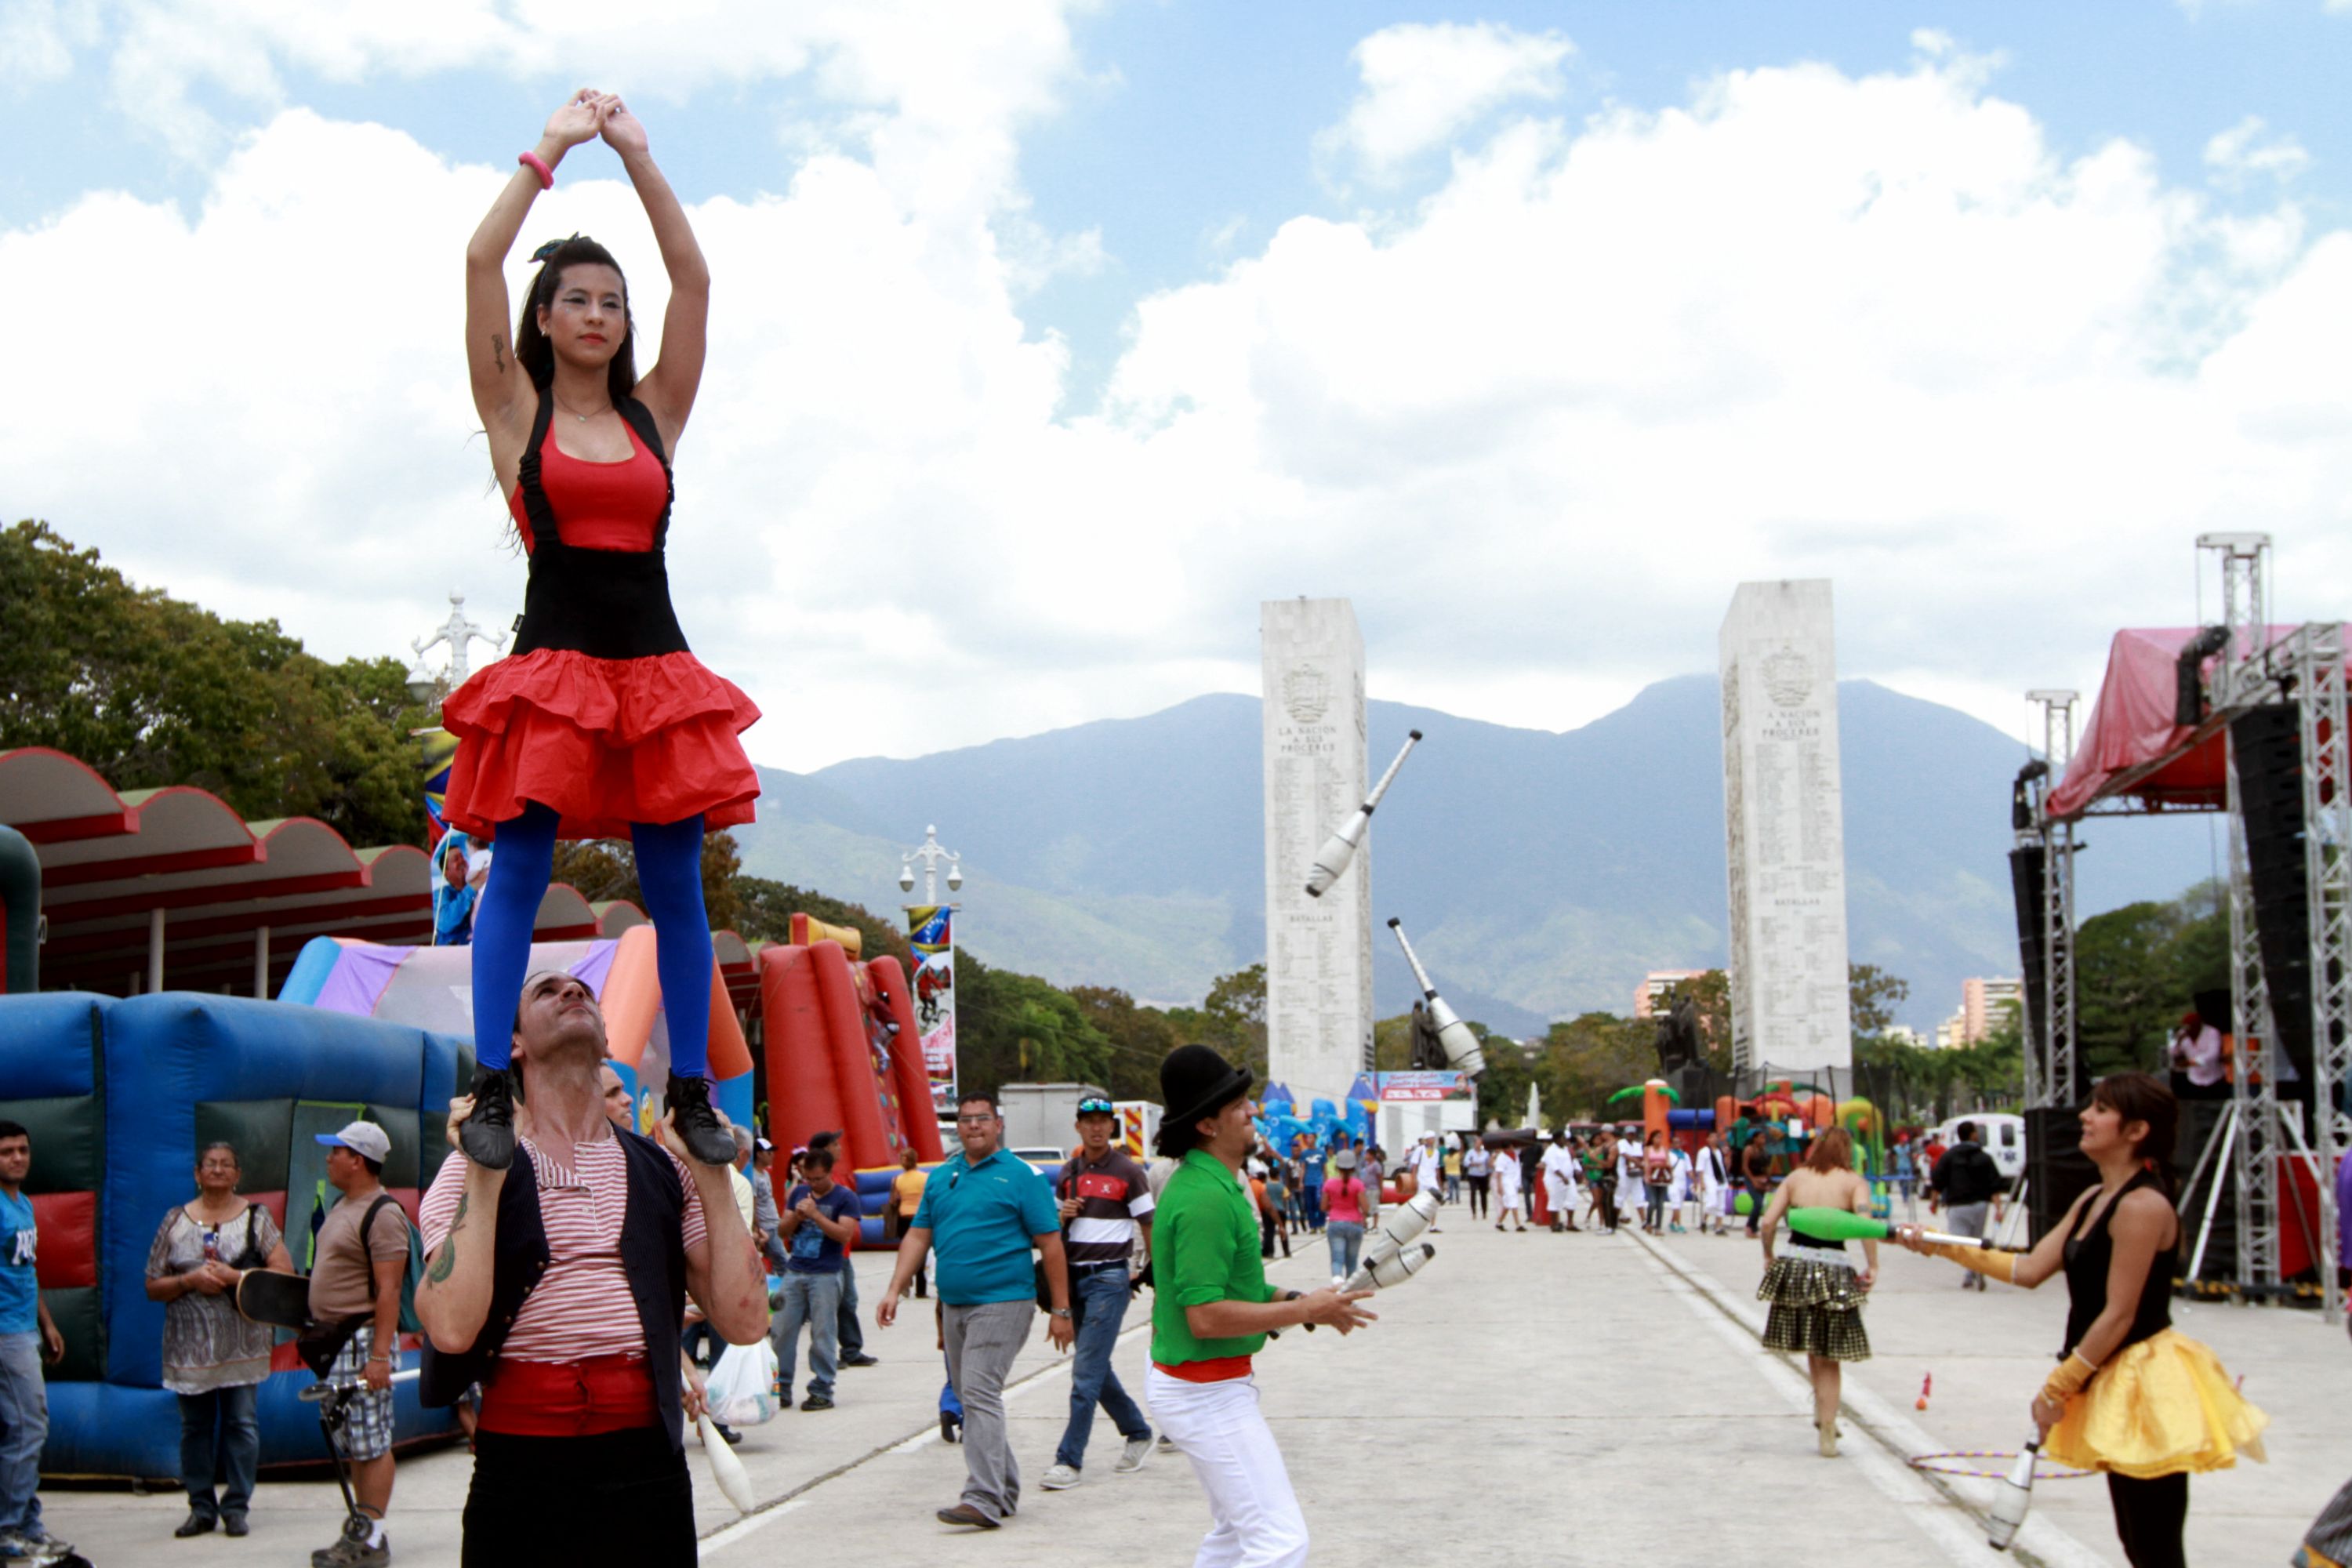 Escasez de “pueblo” en carnaval de Los Próceres  (fotos oficiales + peladero de chivos)